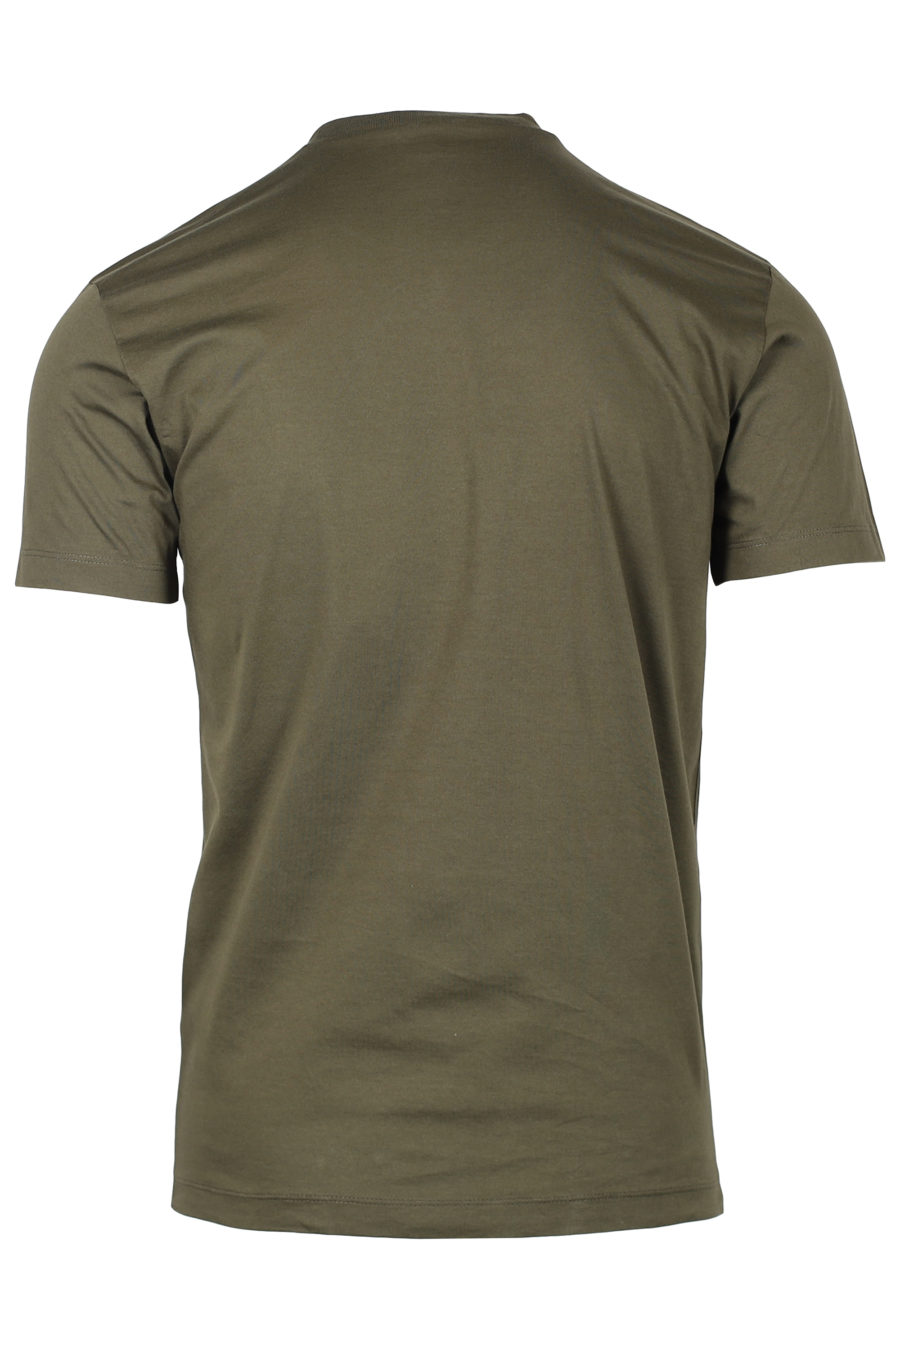 T-shirt verde militar com logótipo em spray - IMG 2372